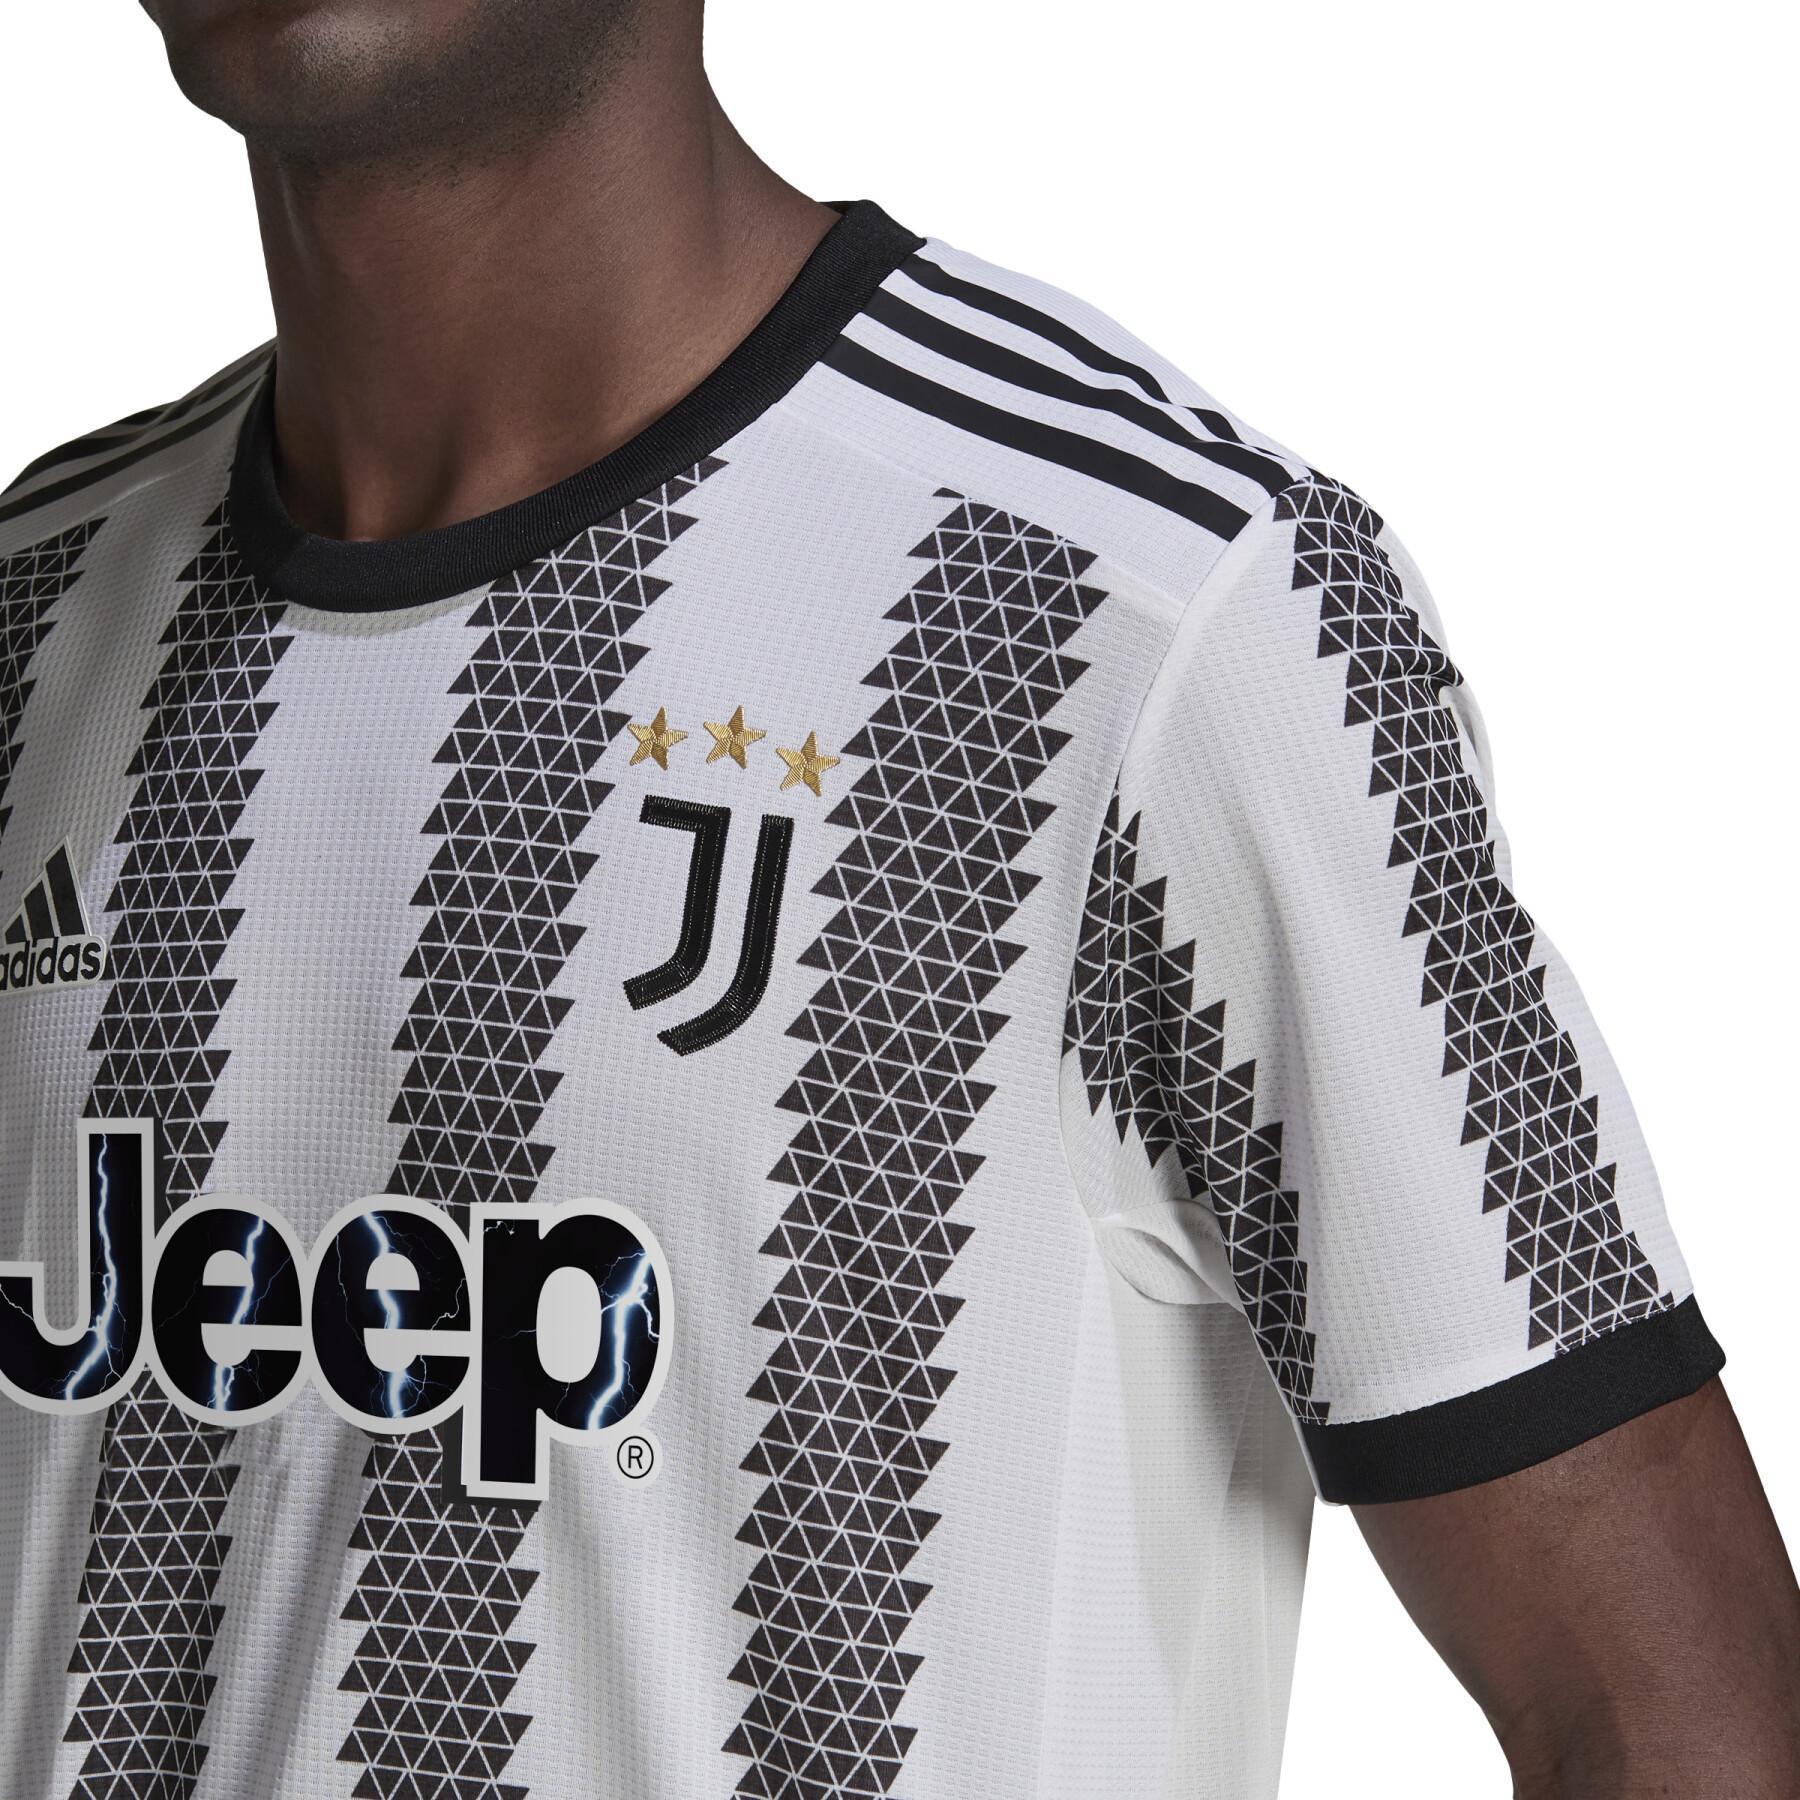 Authentiek Home Jersey Juventus Turin 2022/23